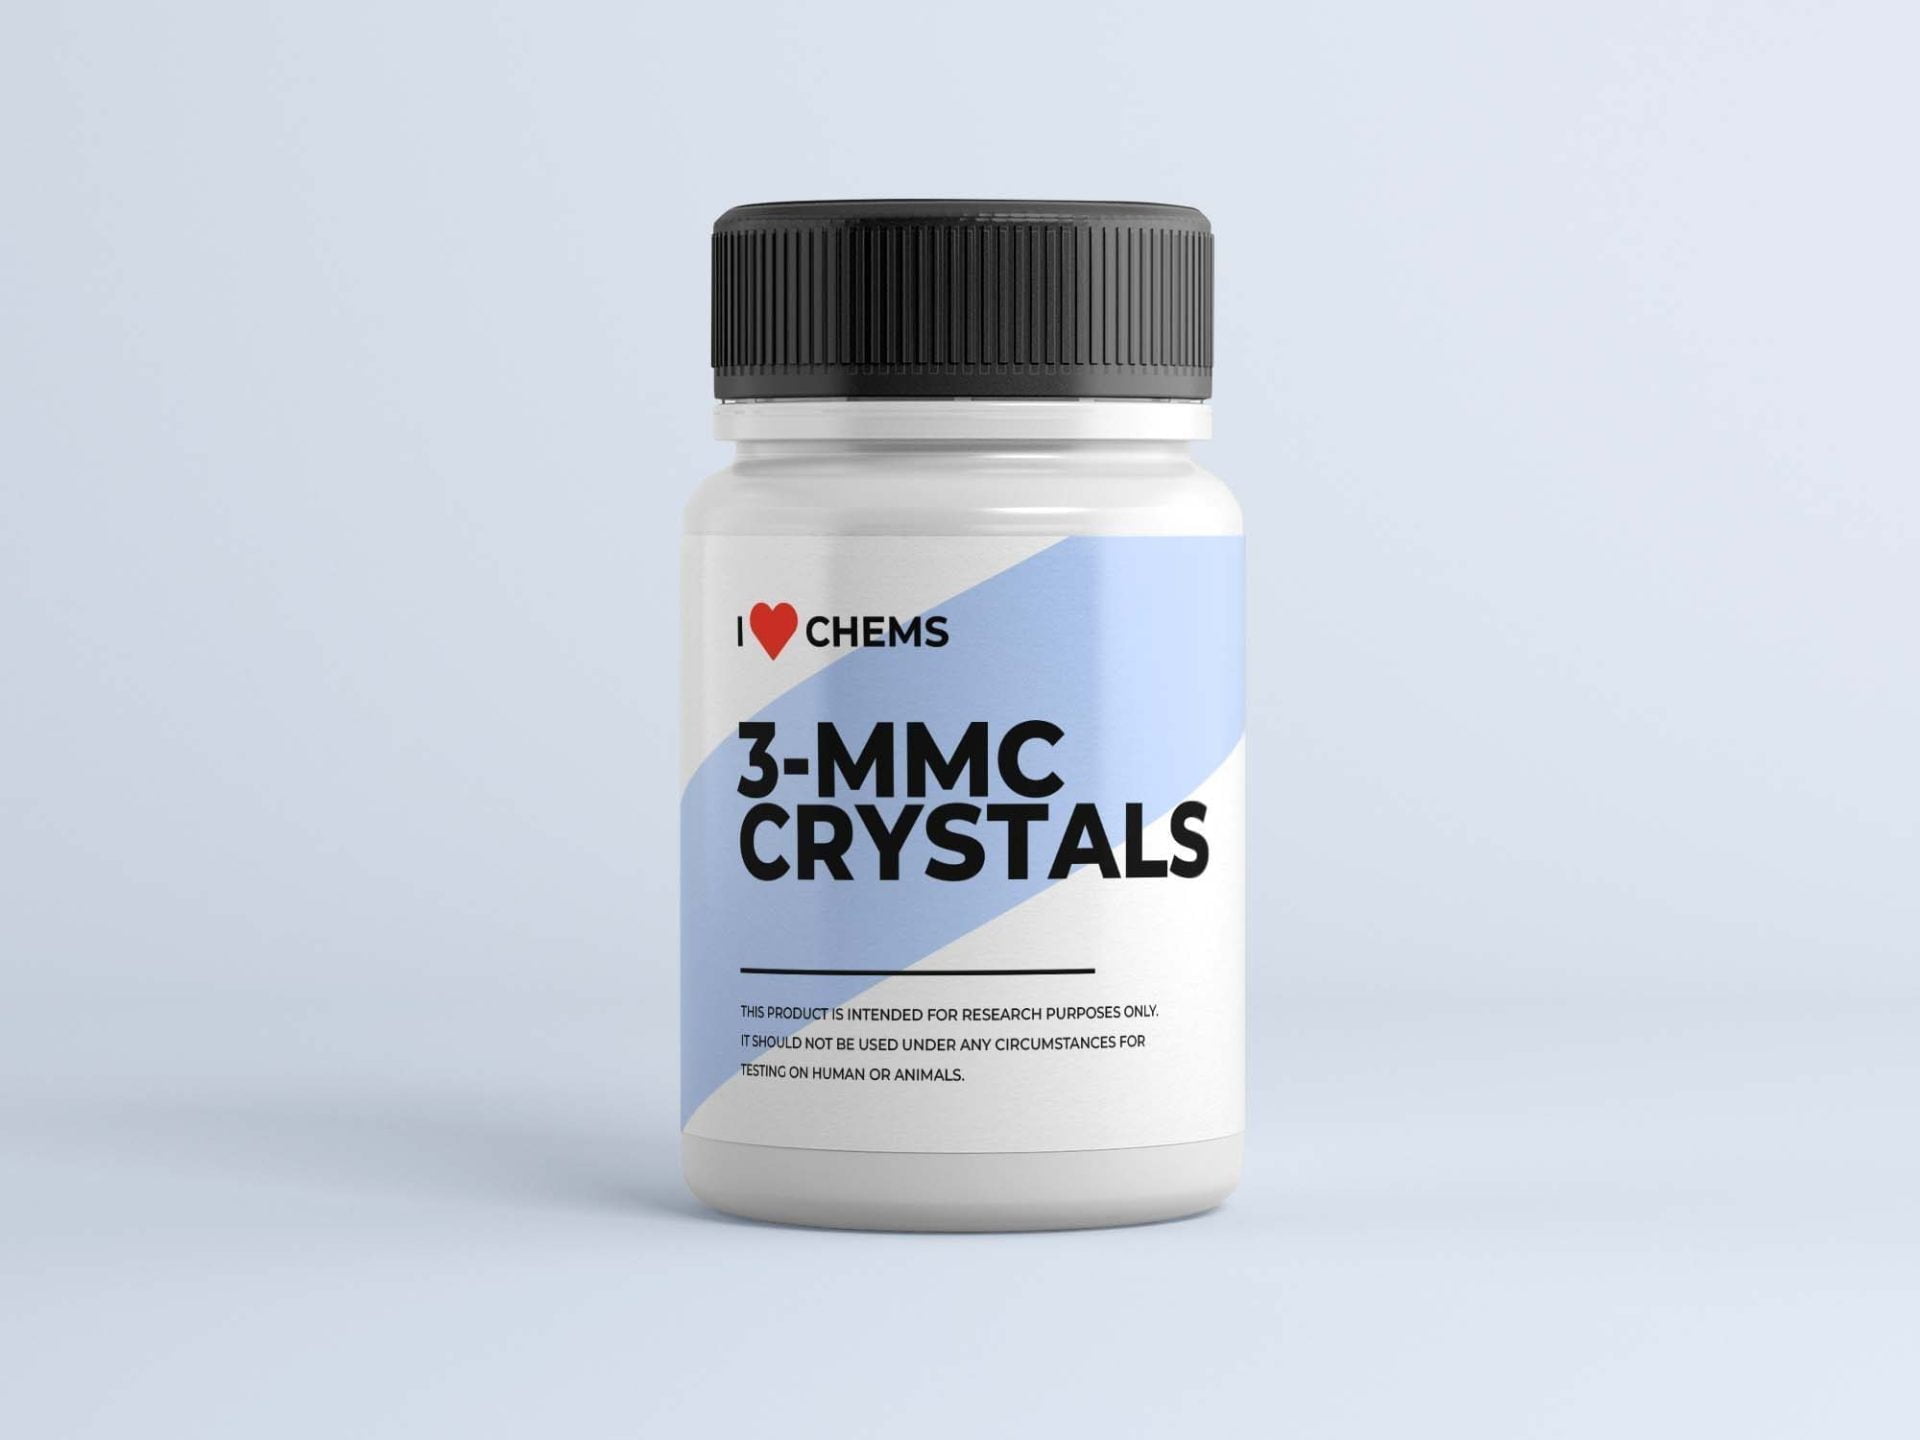 Acquista 3 cristalli MMC da I Love Chems. 3 Negozio MMC nell'UE. Fornitore RC di fiducia